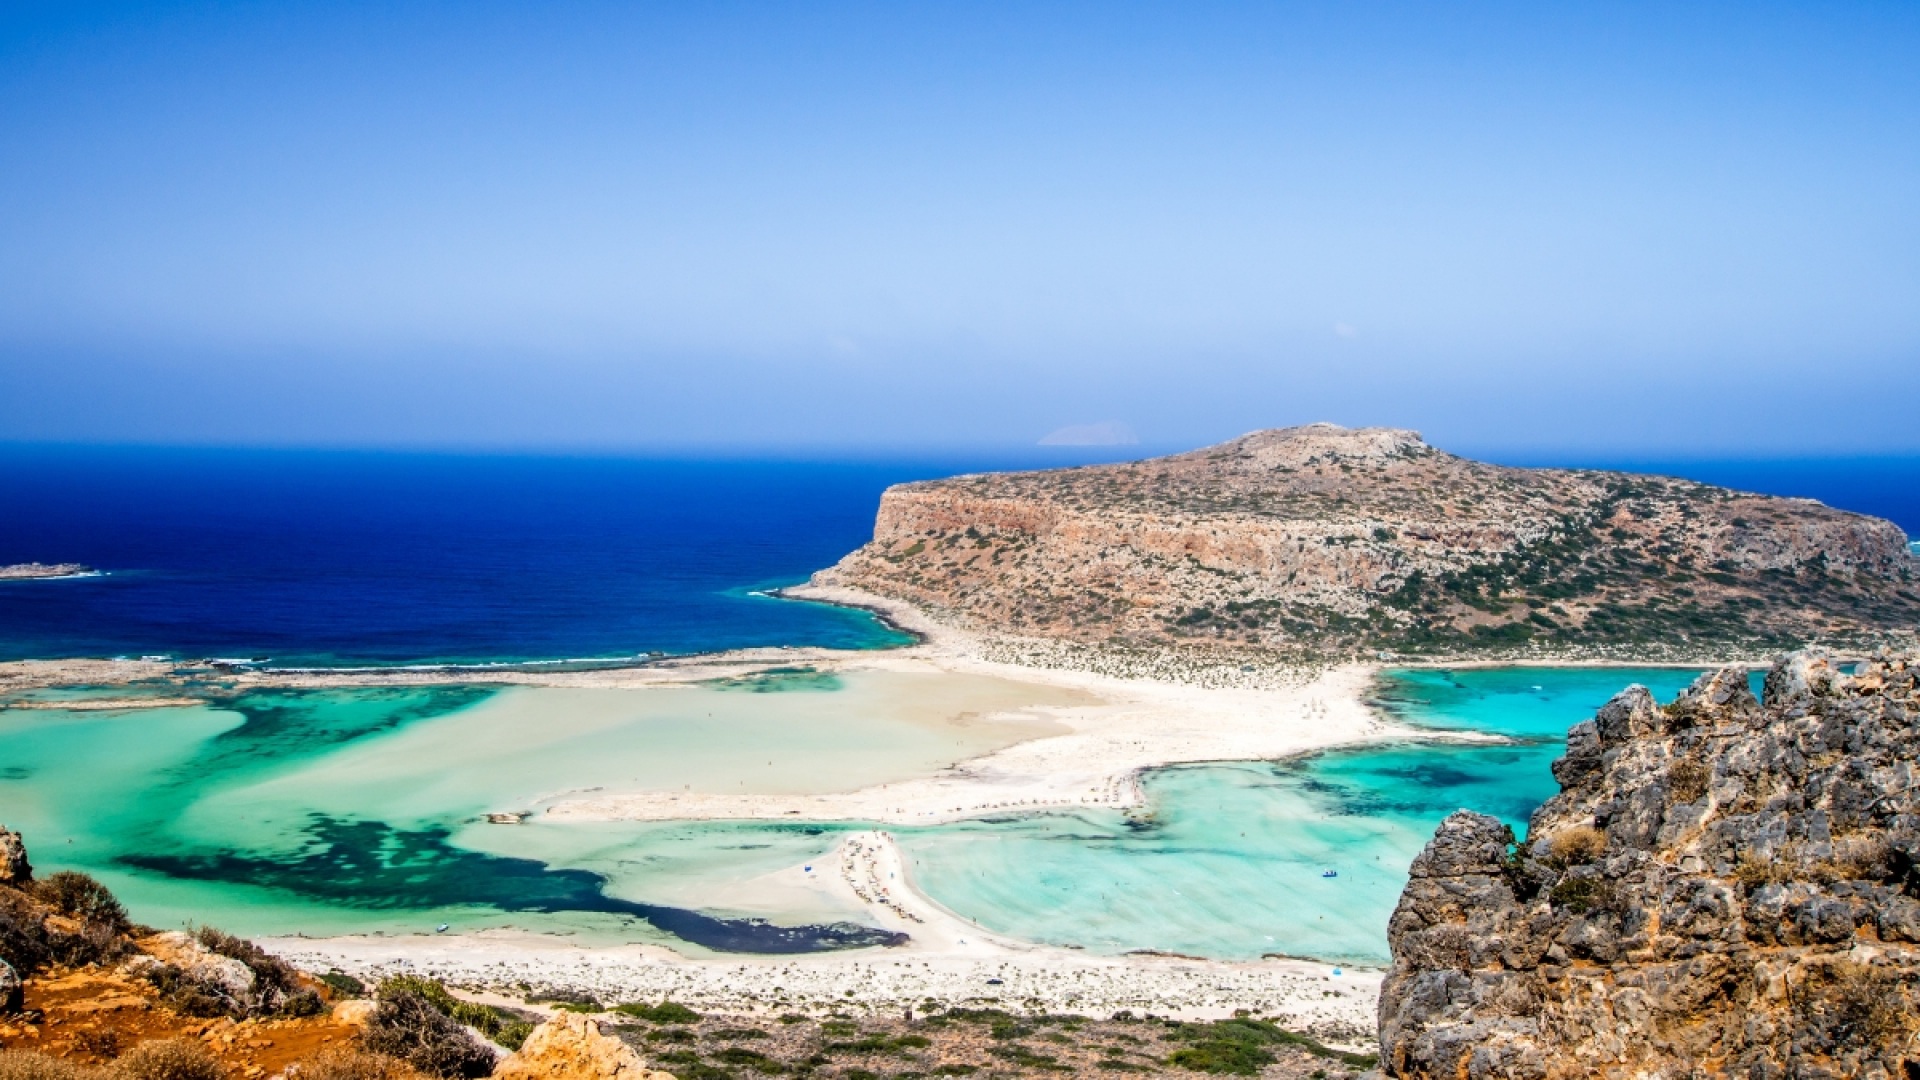 Οι πρώτες ακτίνες του ήλιου: Ο απόλυτος οδηγός για τις καλύτερες παραλίες της Κρήτης την άνοιξη